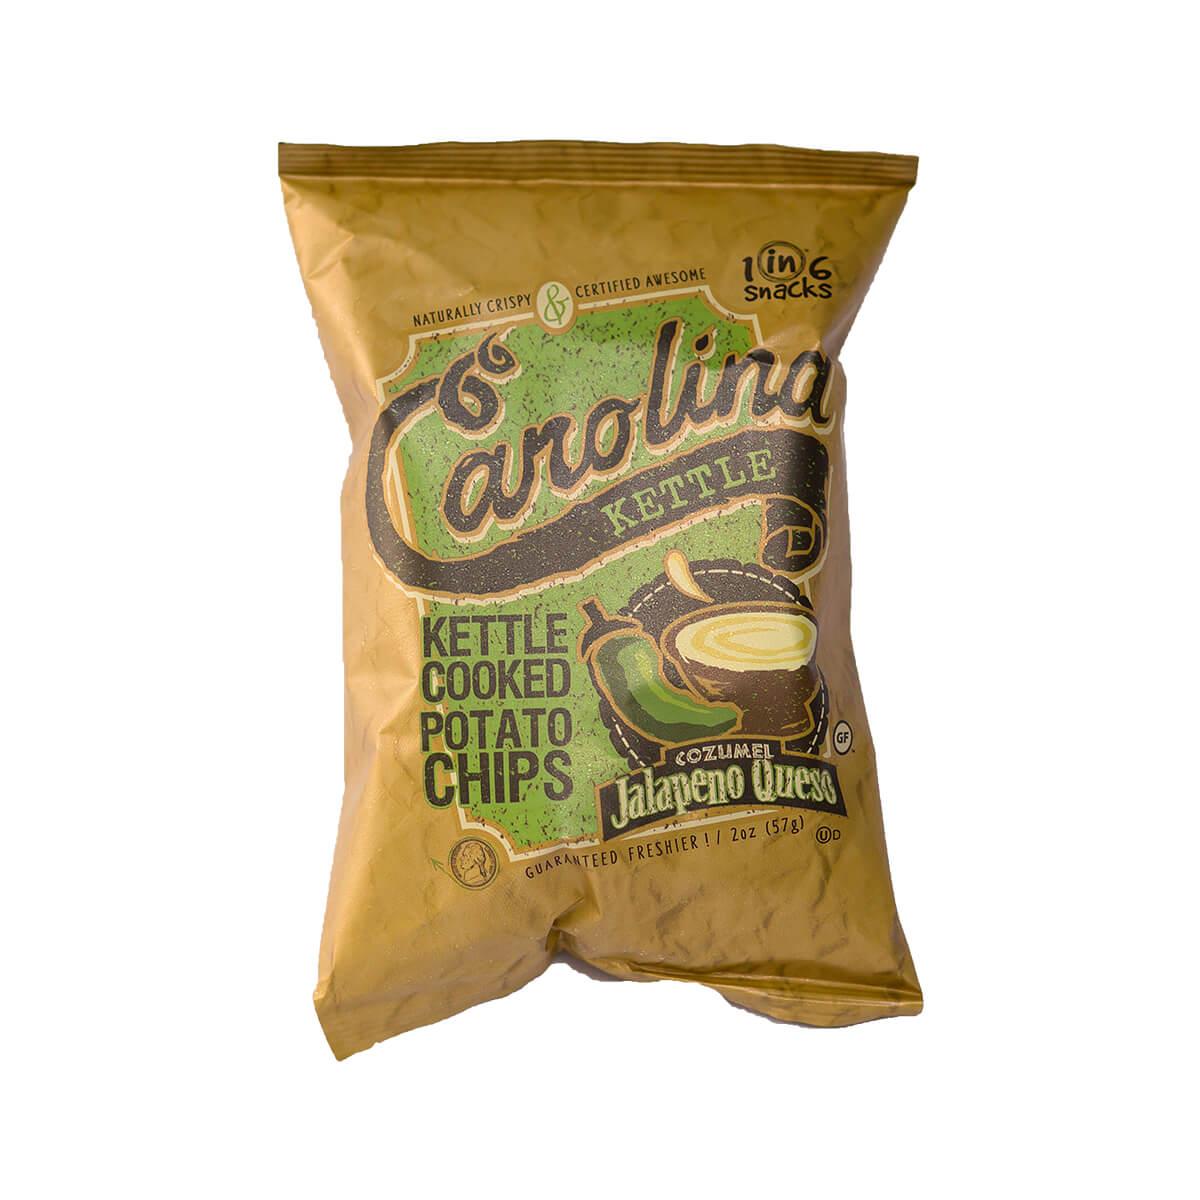  Cozumel Jalapeno Queso Potato Chips - 2 Ounce